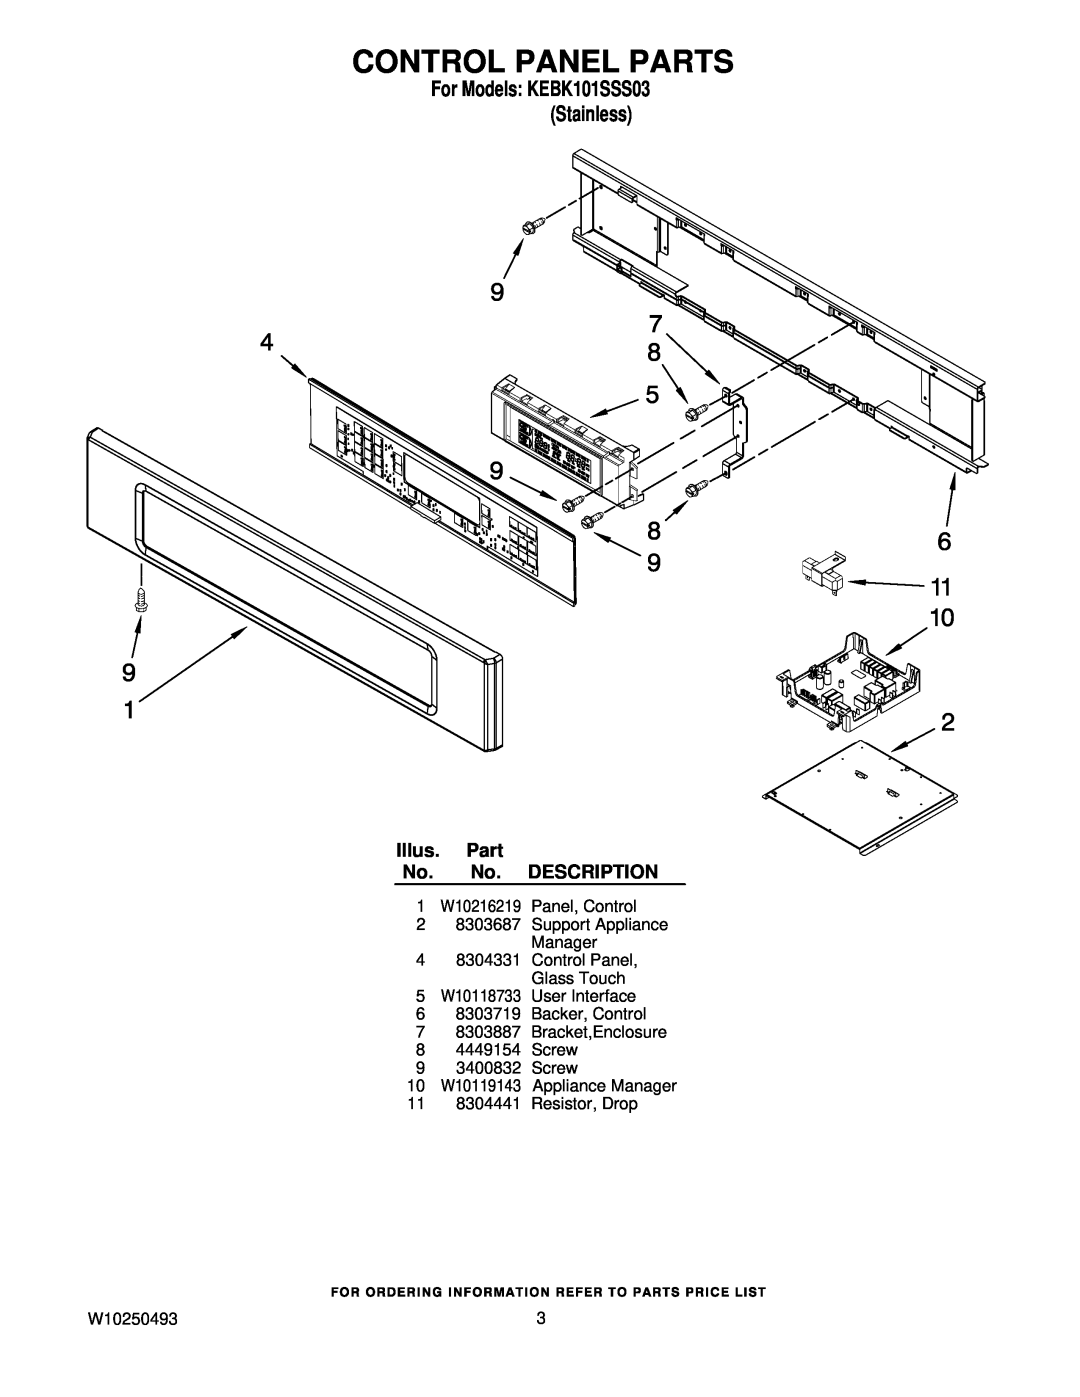 KitchenAid KEBK101SSS03 manual Control Panel Parts, Illus. Part No. No. DESCRIPTION, 11 8304441 Resistor, Drop, W10250493 